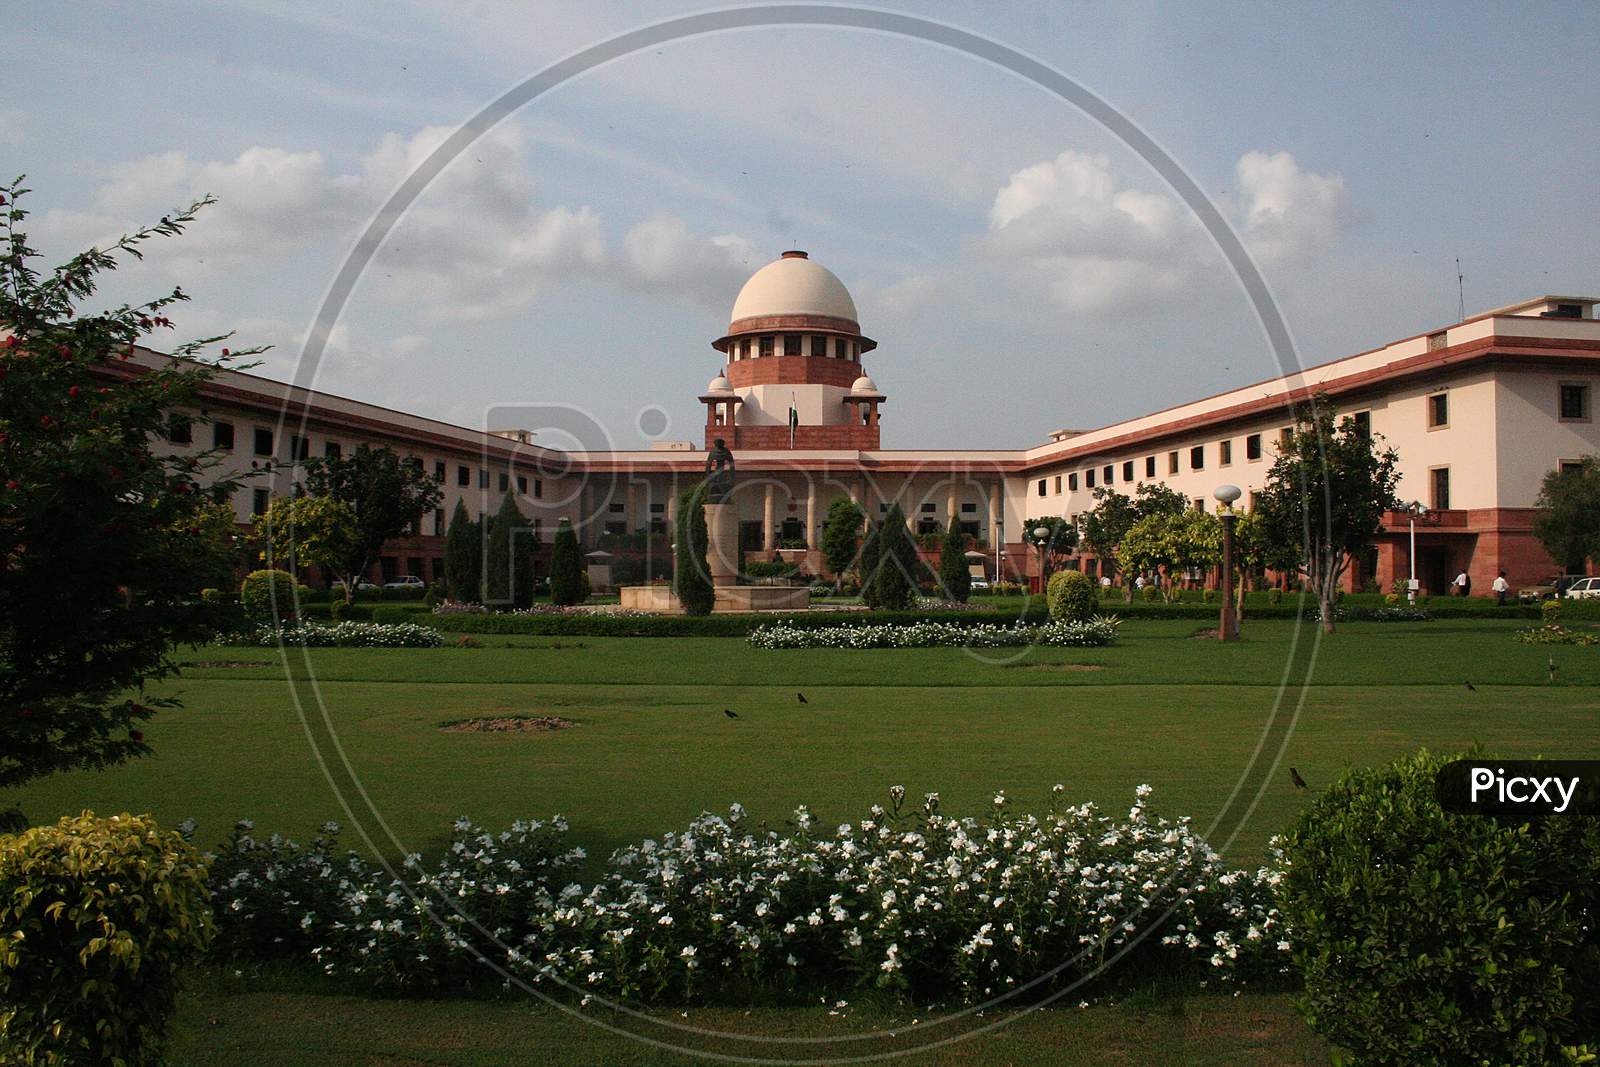 Supreme Court